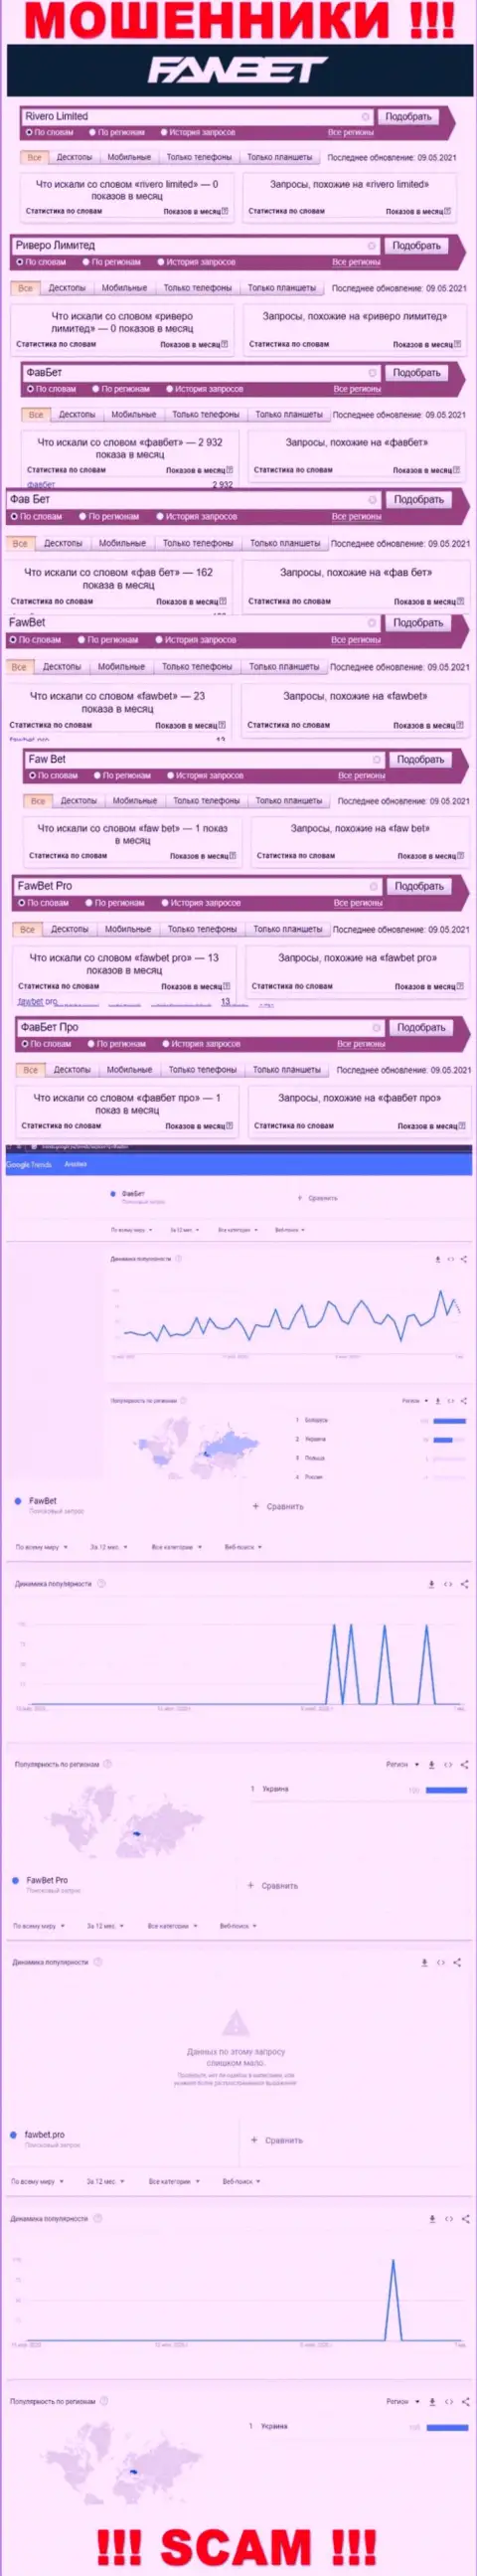 Анализ поисковых запросов, касательно шулеров FawBet Pro, в сети интернет